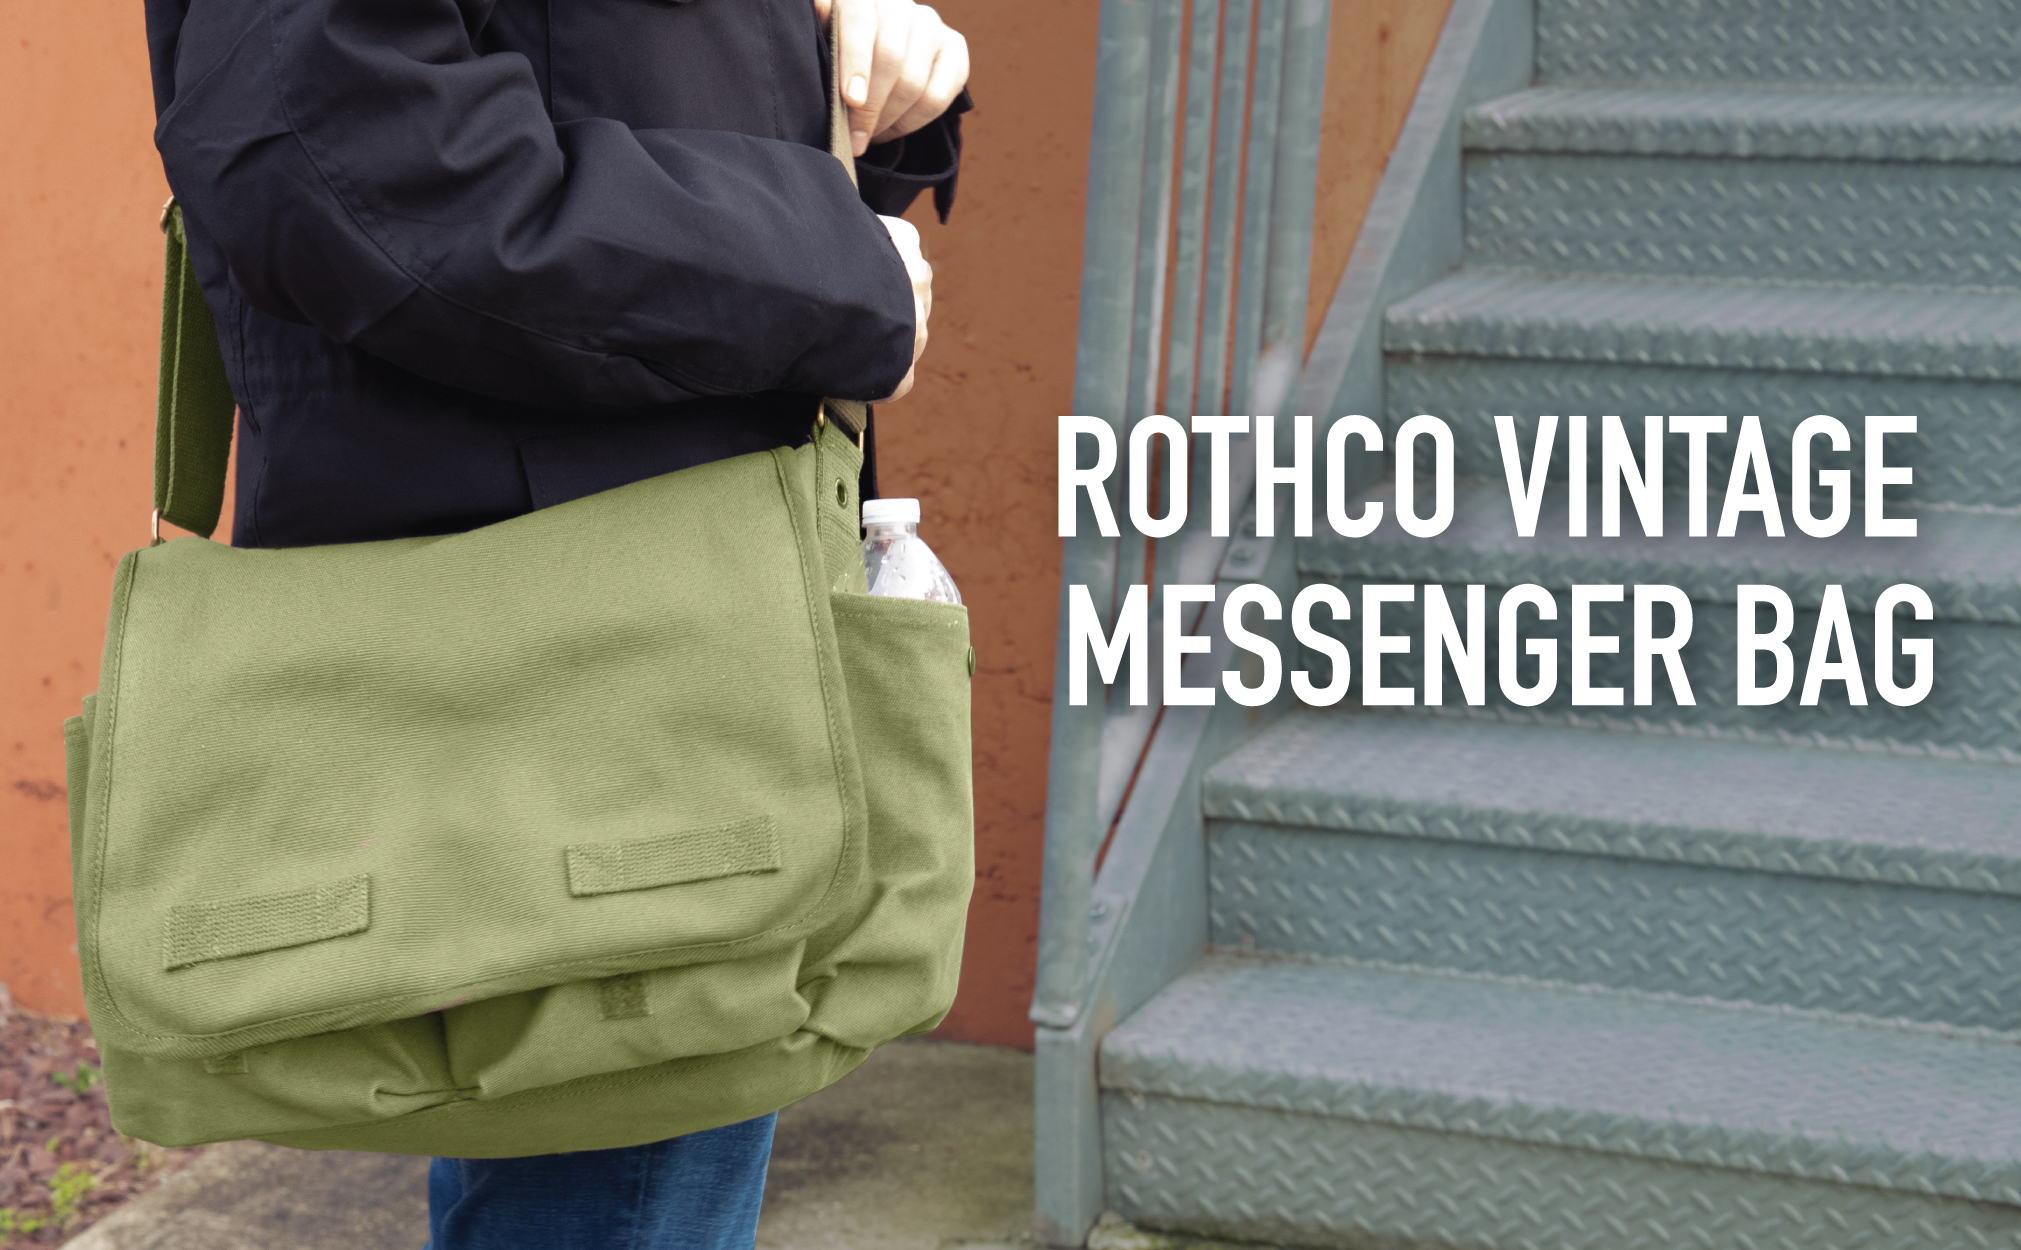 Rothco Classic Canvas Messenger Bag, Grey - image 3 of 3